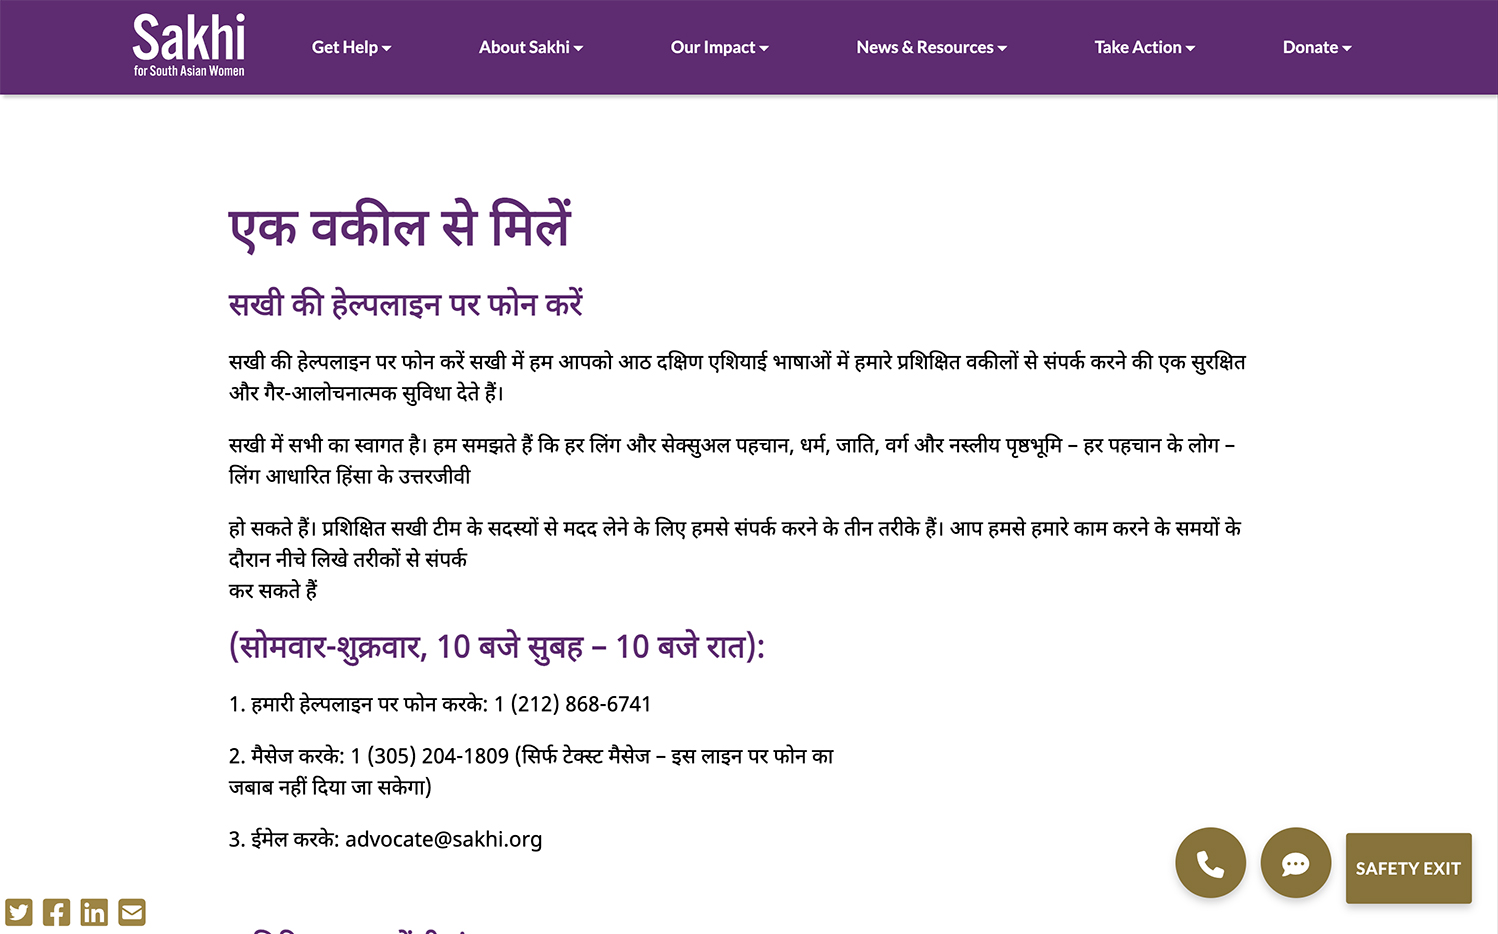 Sakhi website Hindi Get Help page